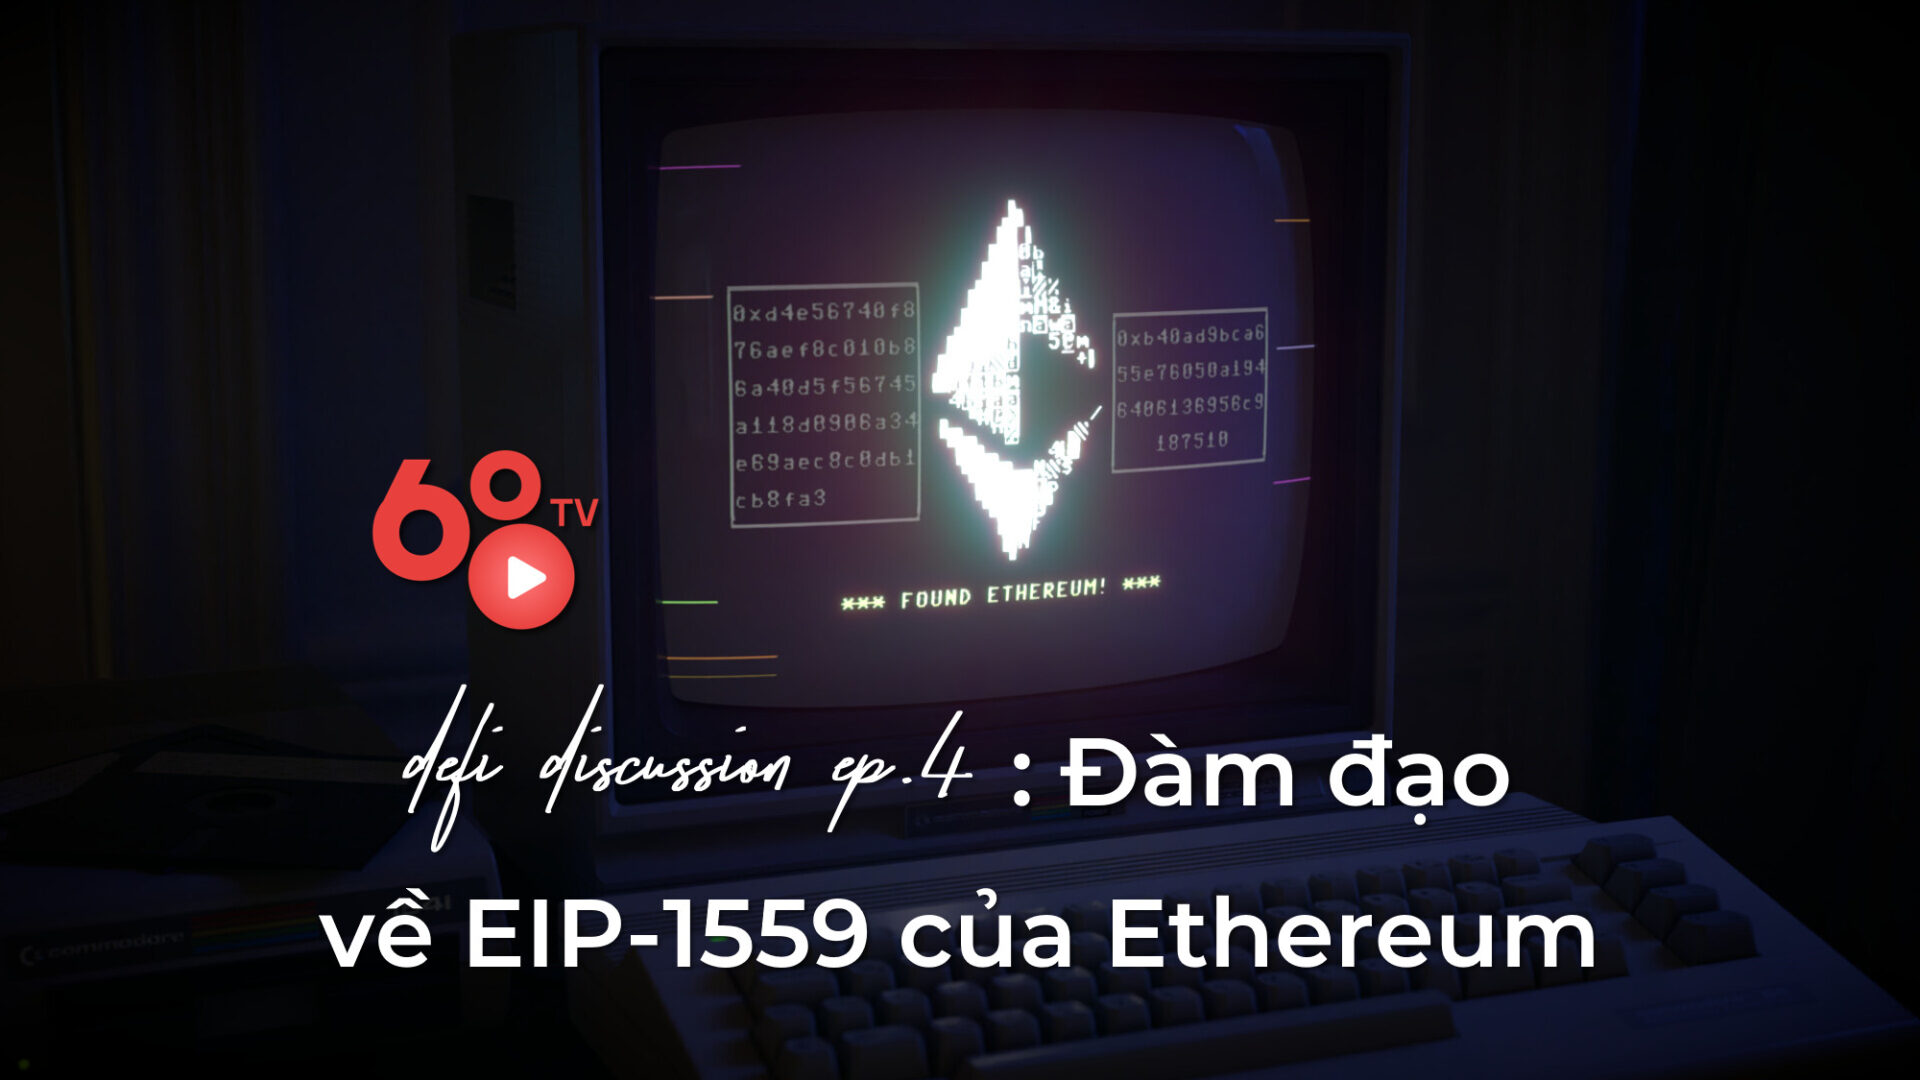 DeFi Discussion Ep 4: Discuss Ethereum EIP-1559